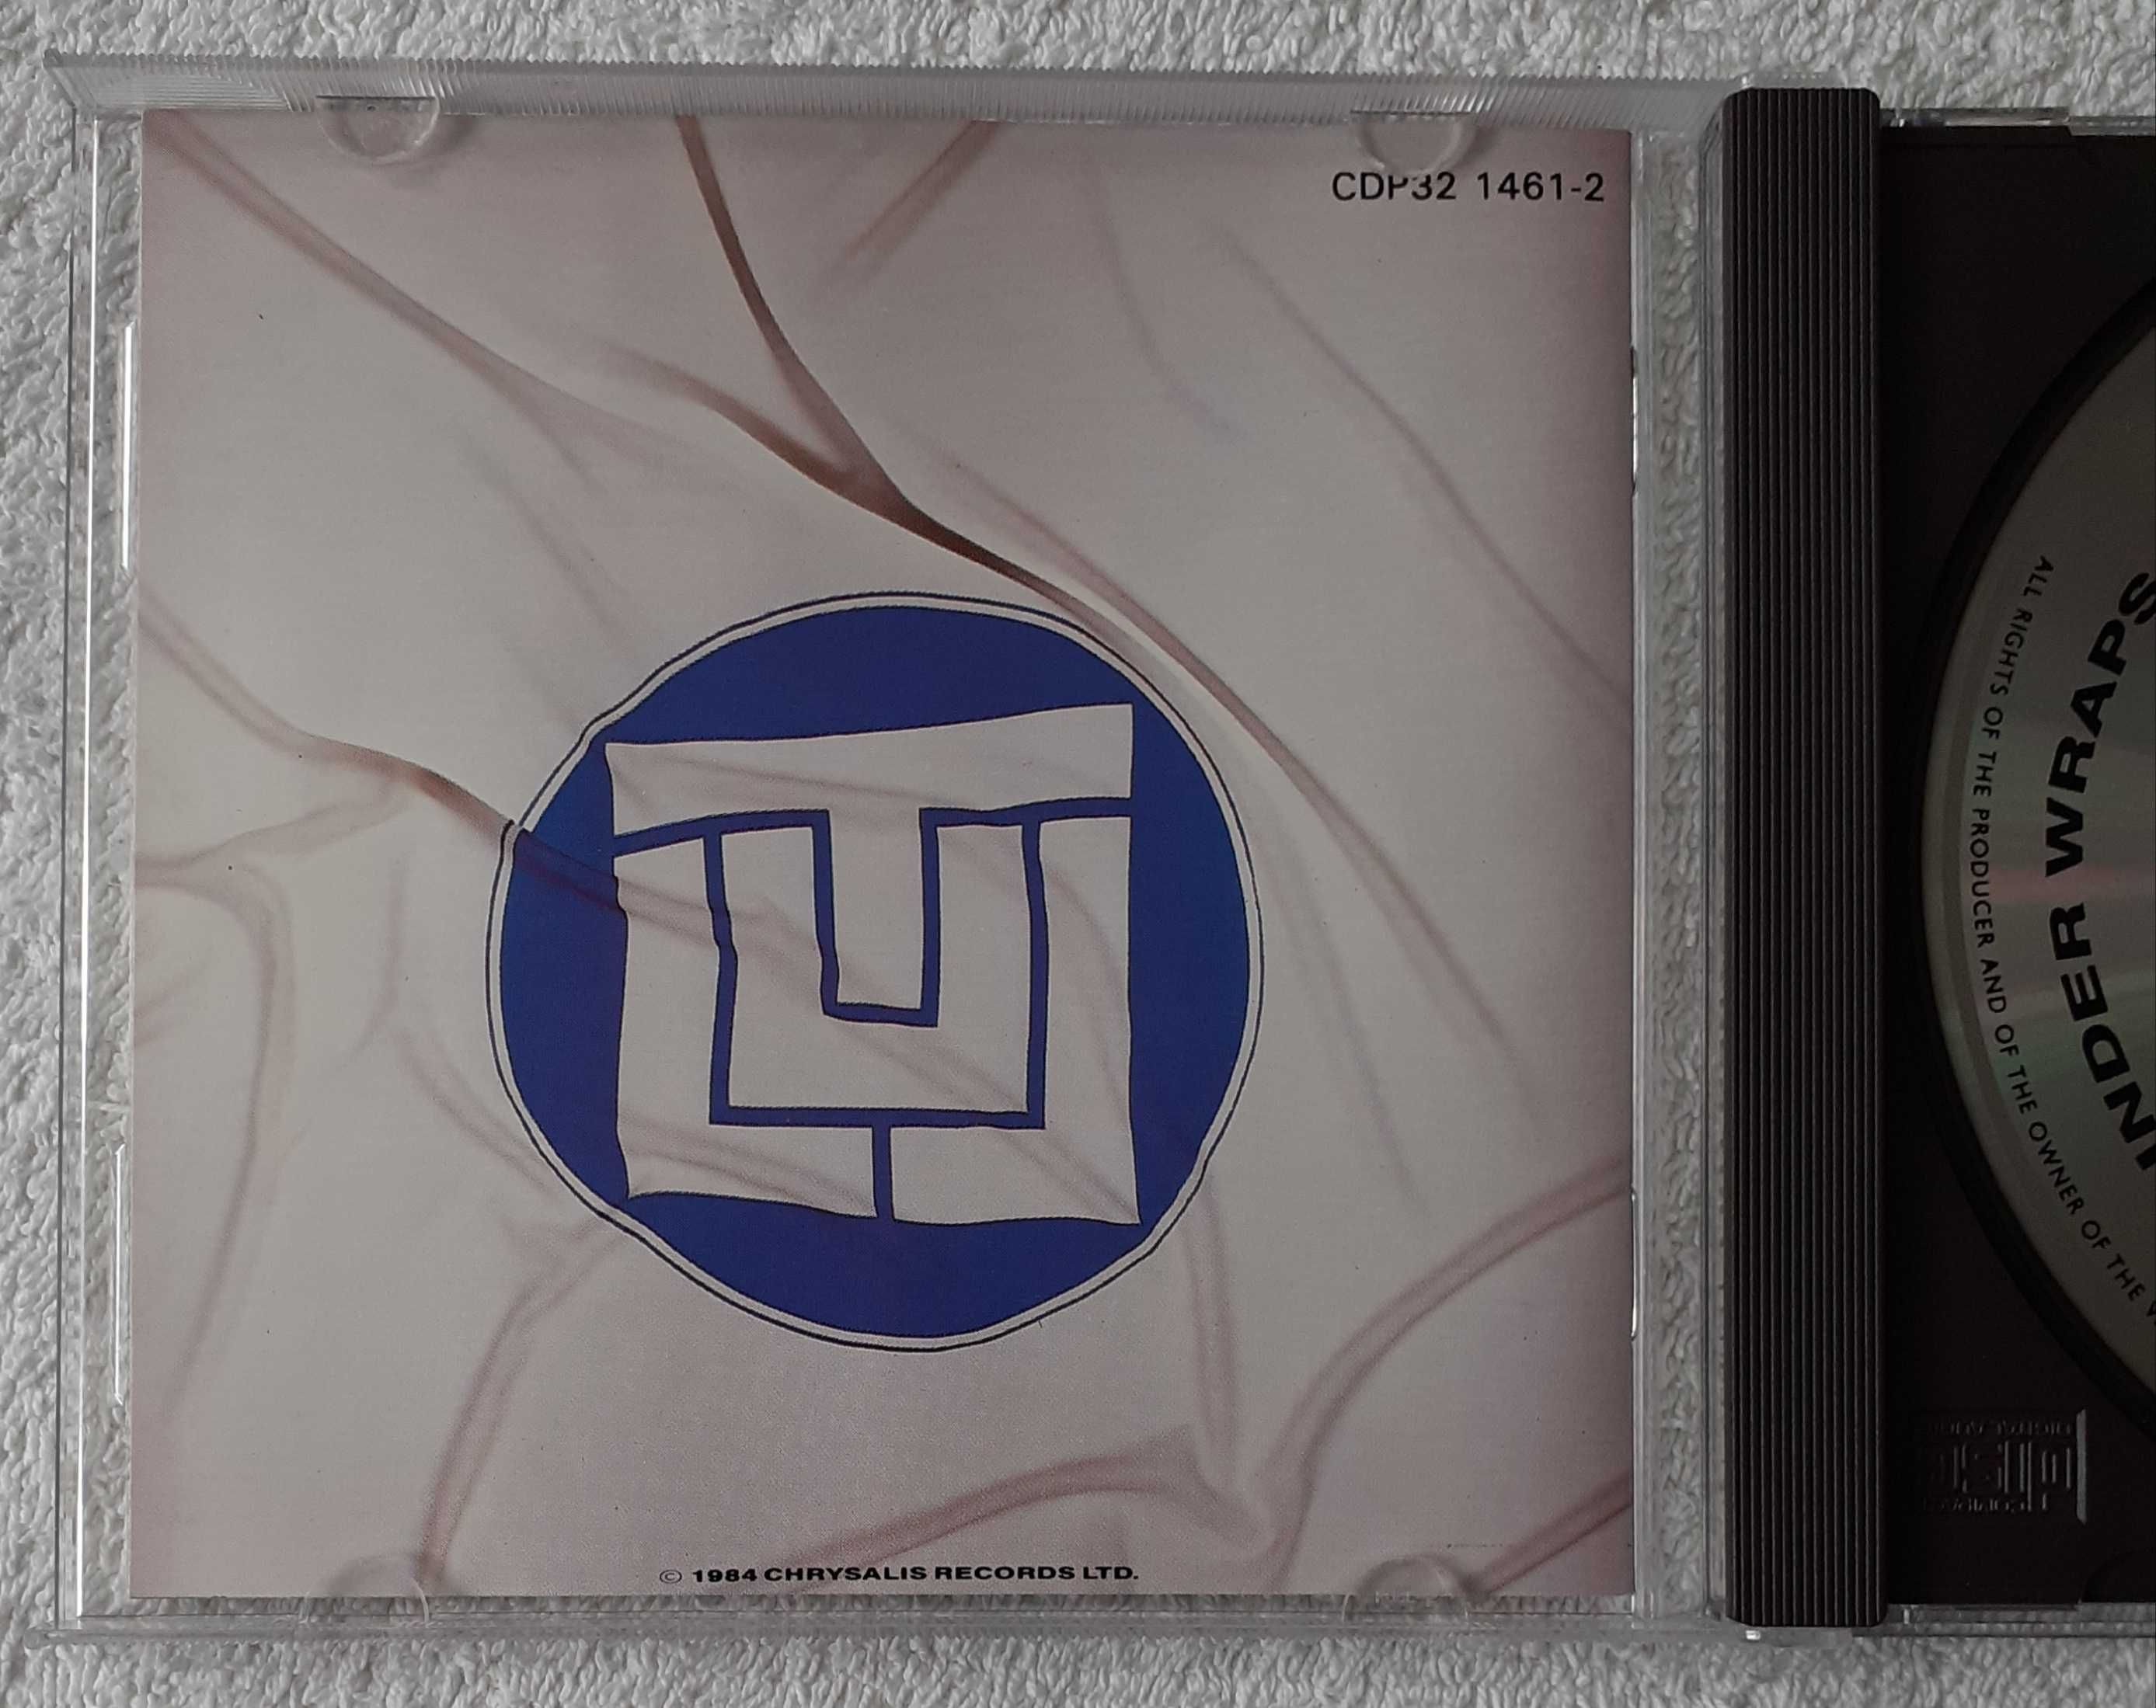 Jethro Tull – Under Wraps (CD, Album) plus GRATIS